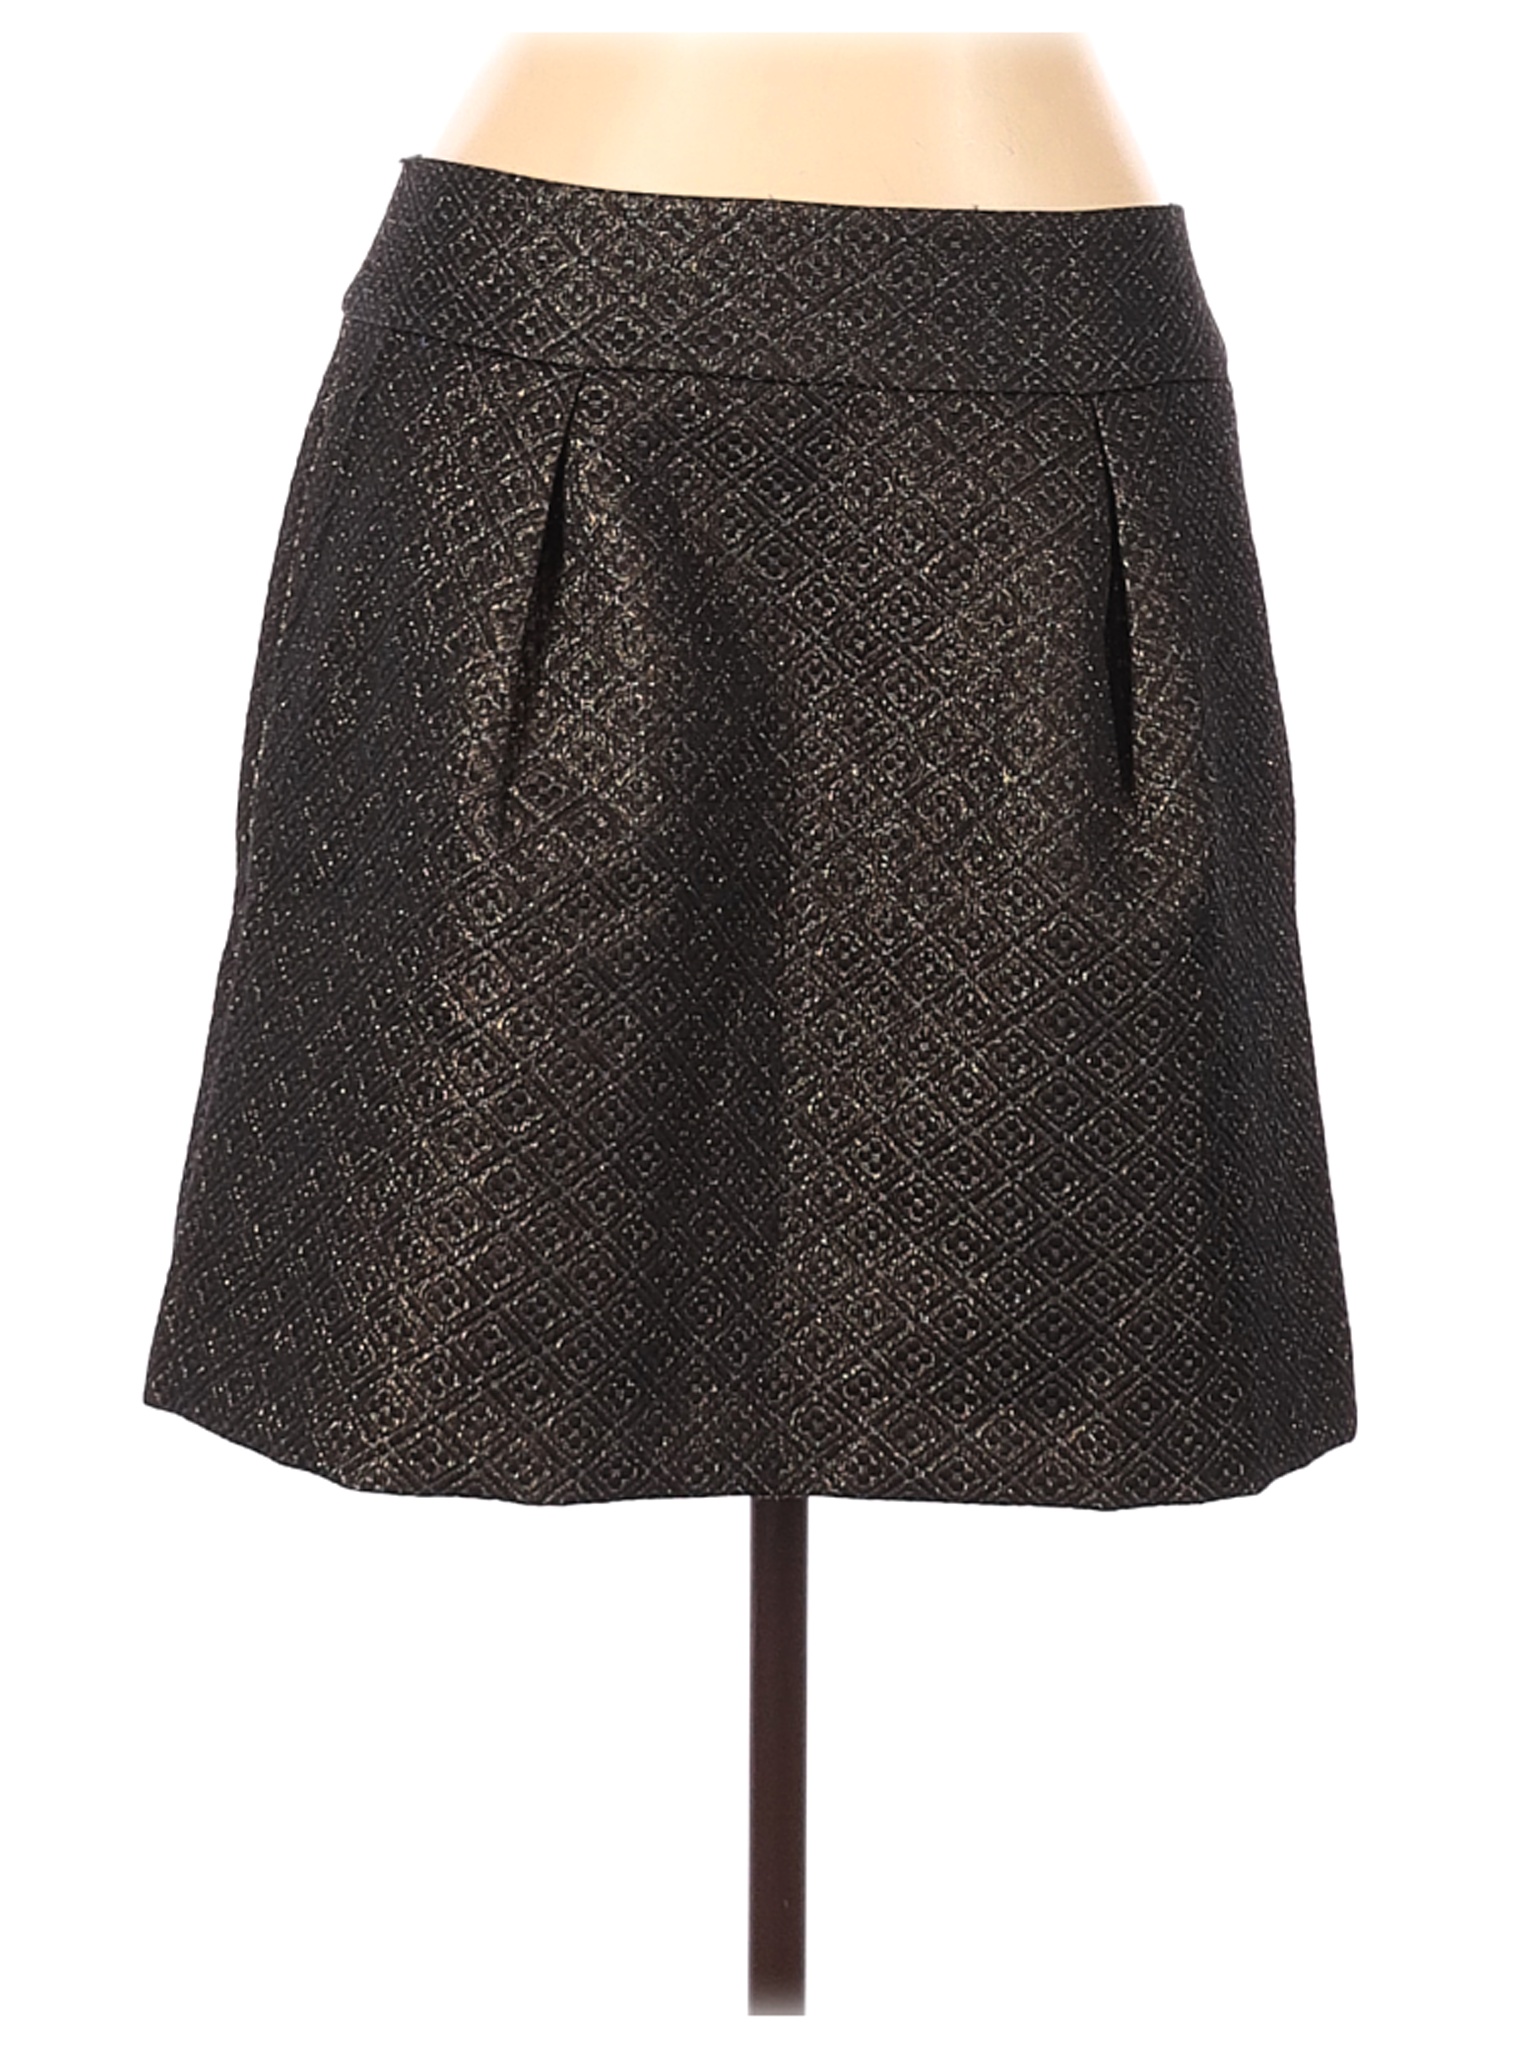 Ann Taylor LOFT Women Black Formal Skirt 12 | eBay